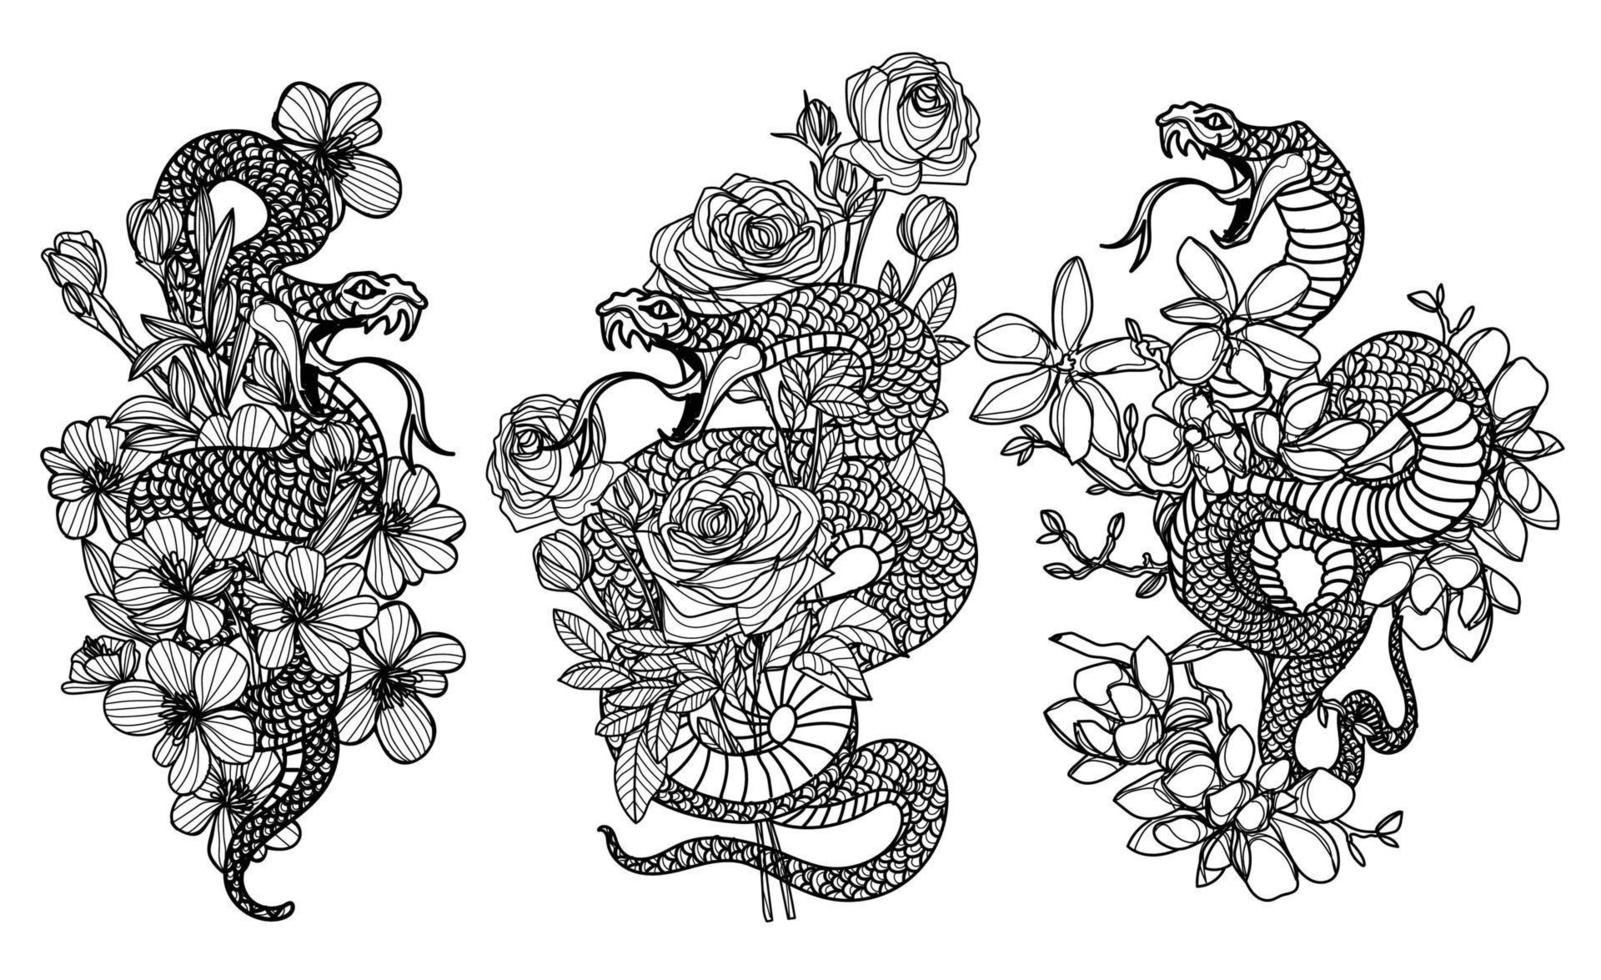 arte del tatuaje serpiente y dibujo de flores y bocetos en blanco y negro vector